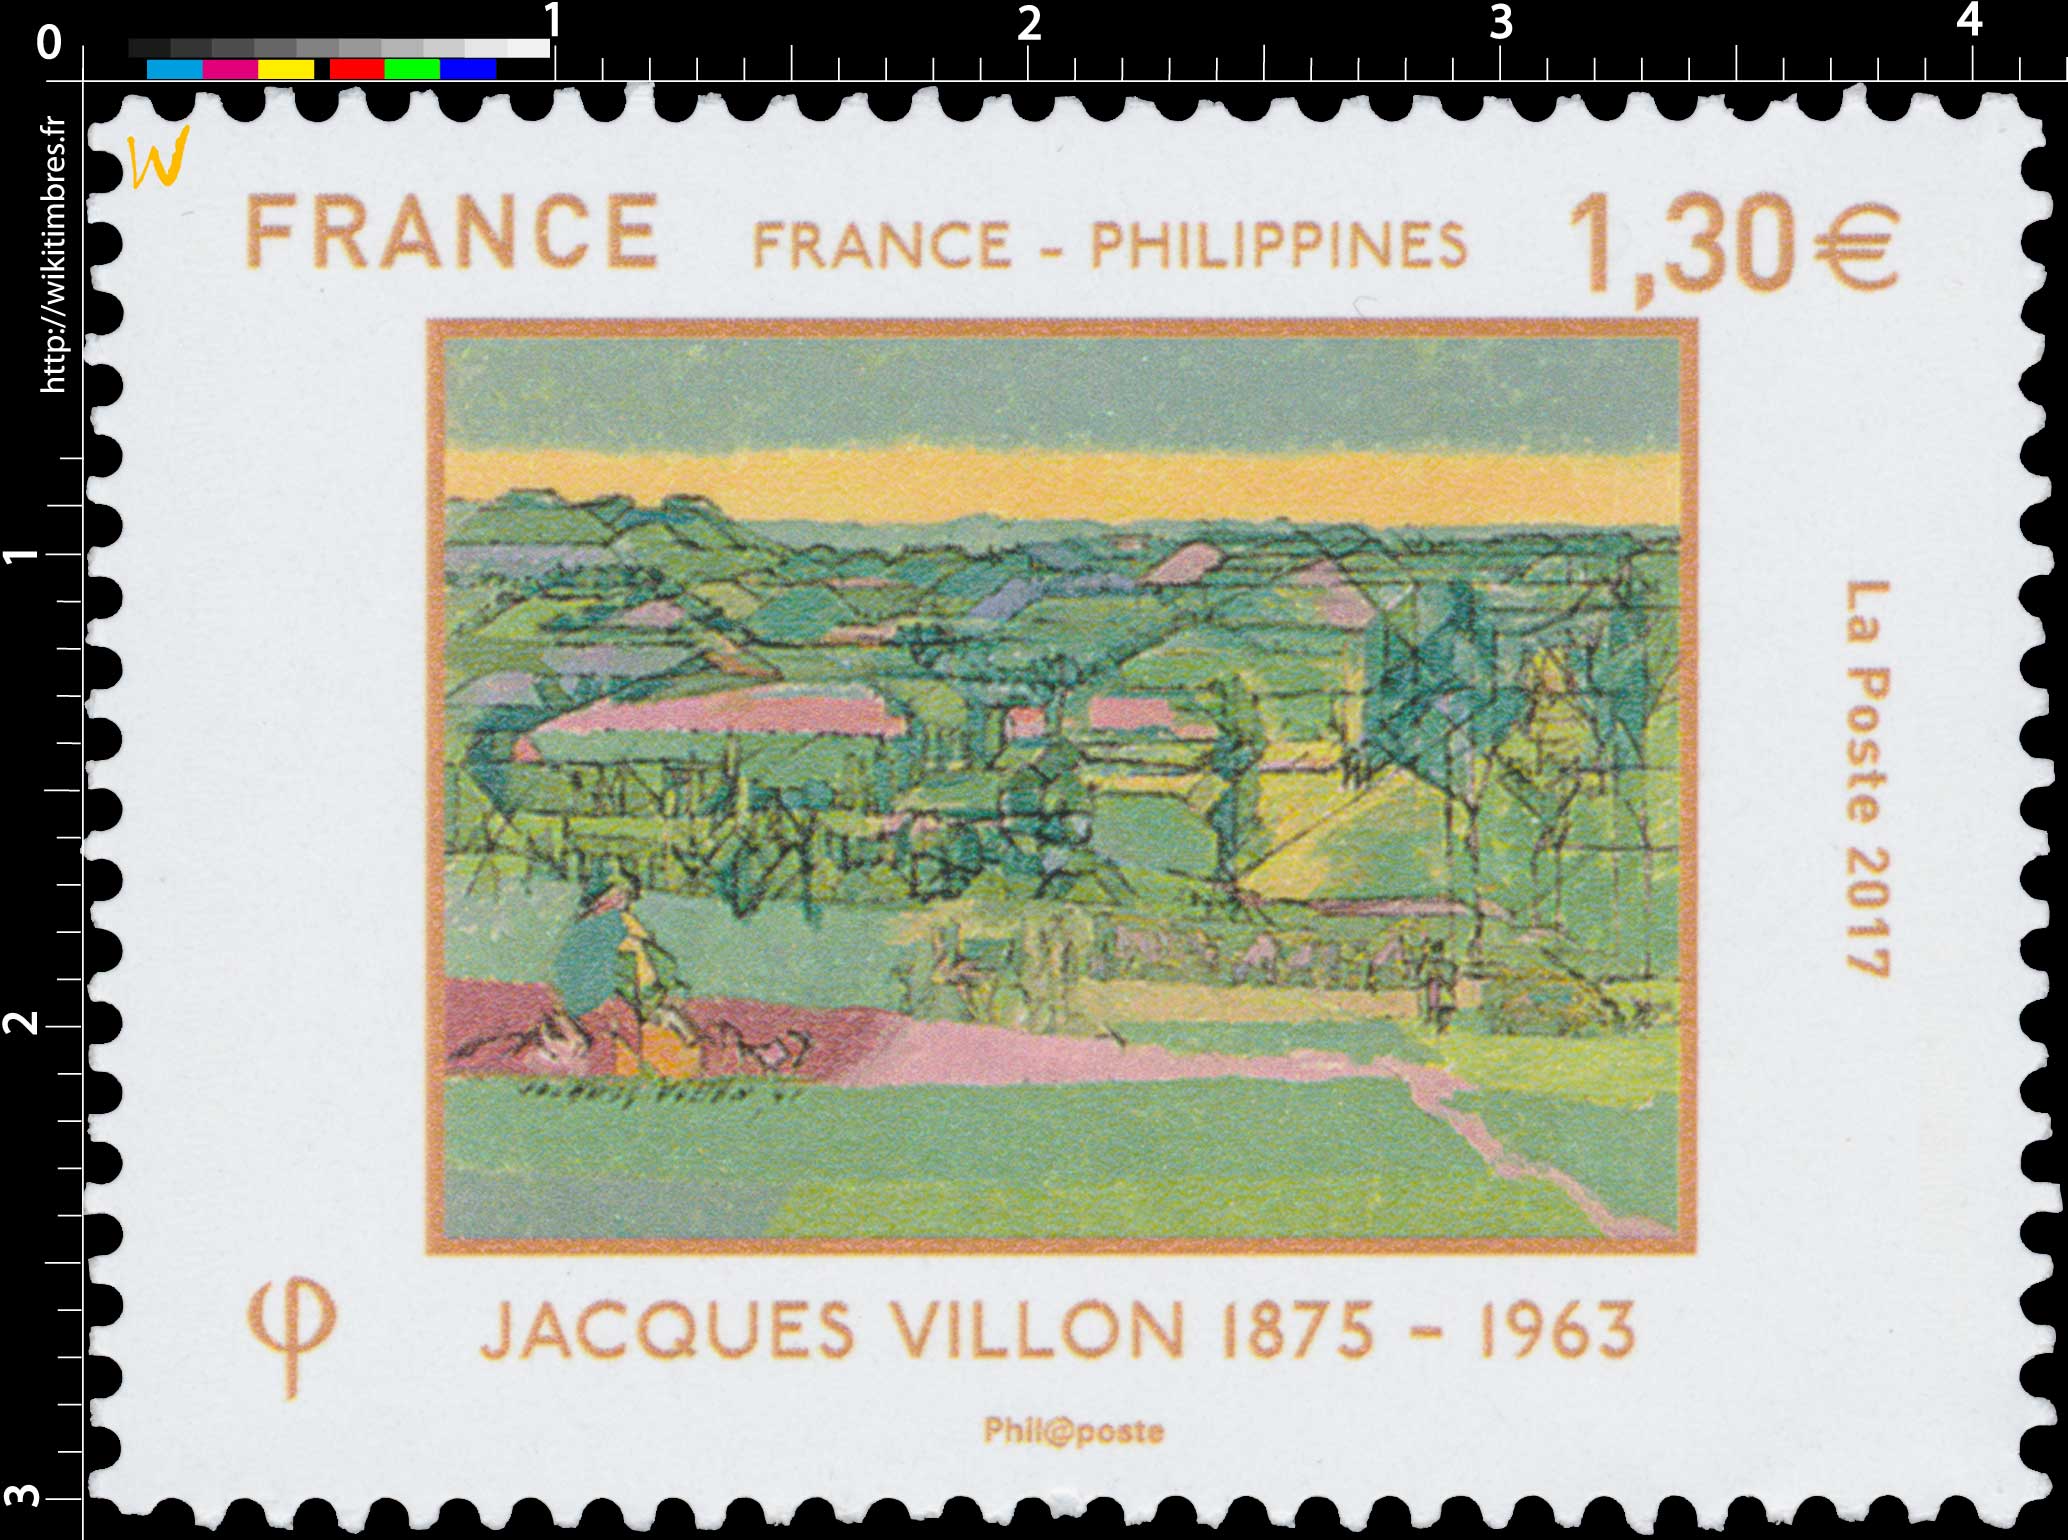 2017 France - Philippines - Jacques Villon 1875 - 1963